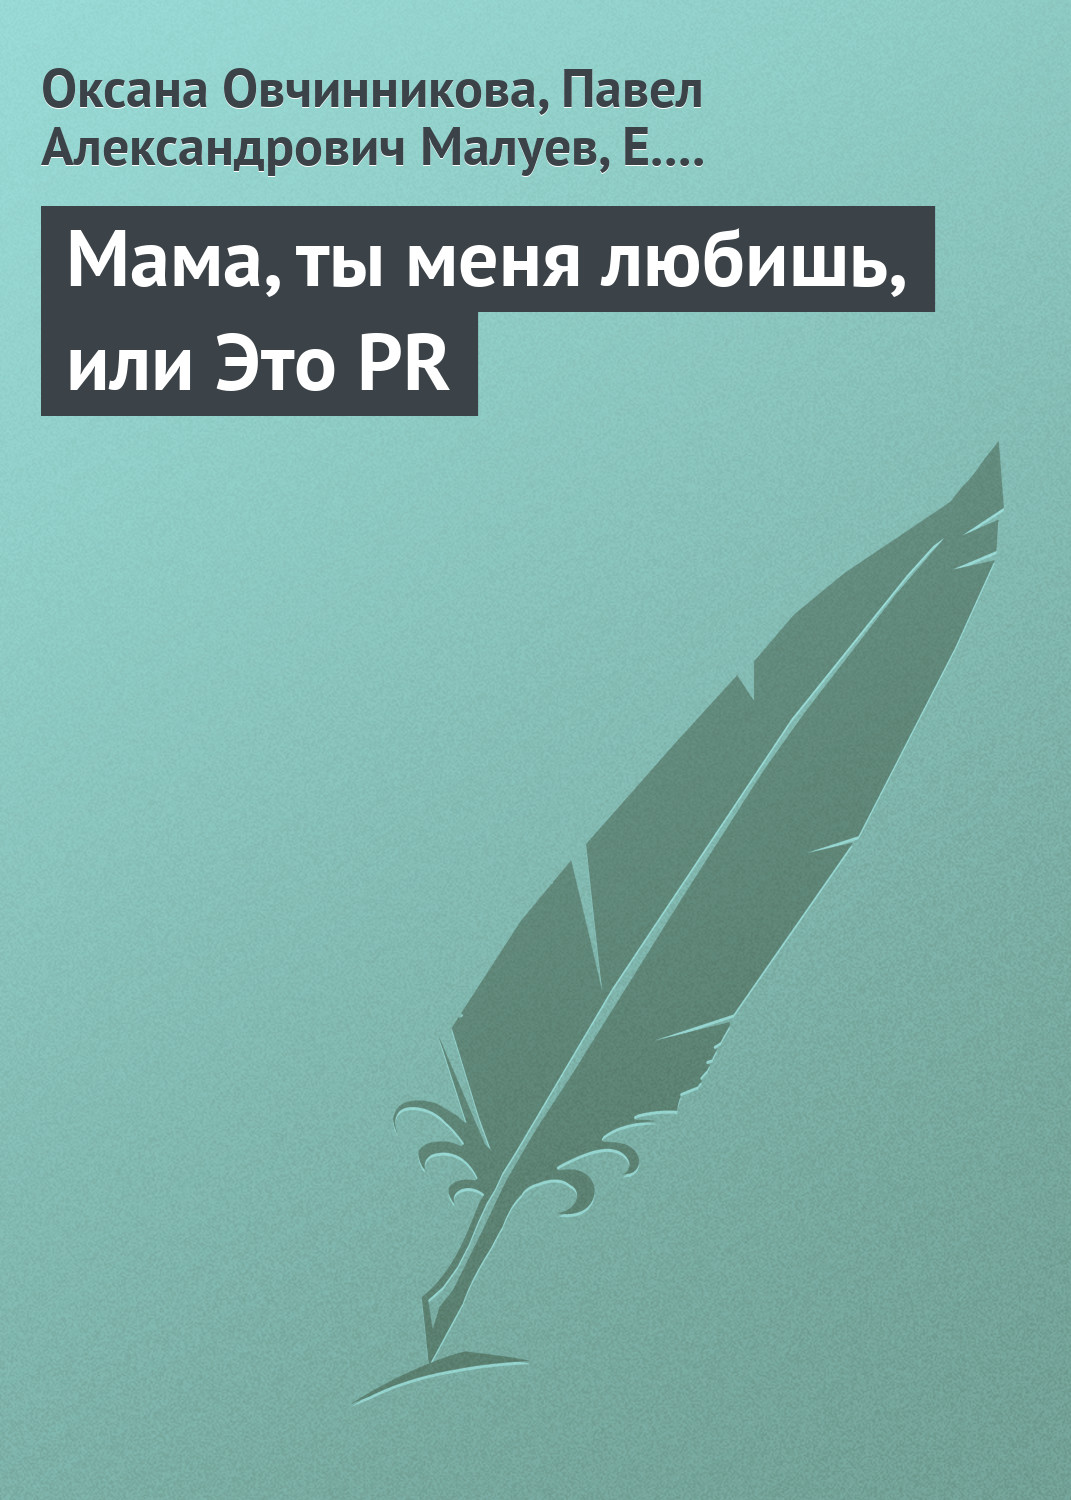 Книга Мама, ты меня любишь, или Это PR из серии , созданная Павел Малуев, Е. Лебедева, Оксана Овчинникова, может относится к жанру Маркетинг, PR, реклама. Стоимость электронной книги Мама, ты меня любишь, или Это PR с идентификатором 6184293 составляет 99.90 руб.